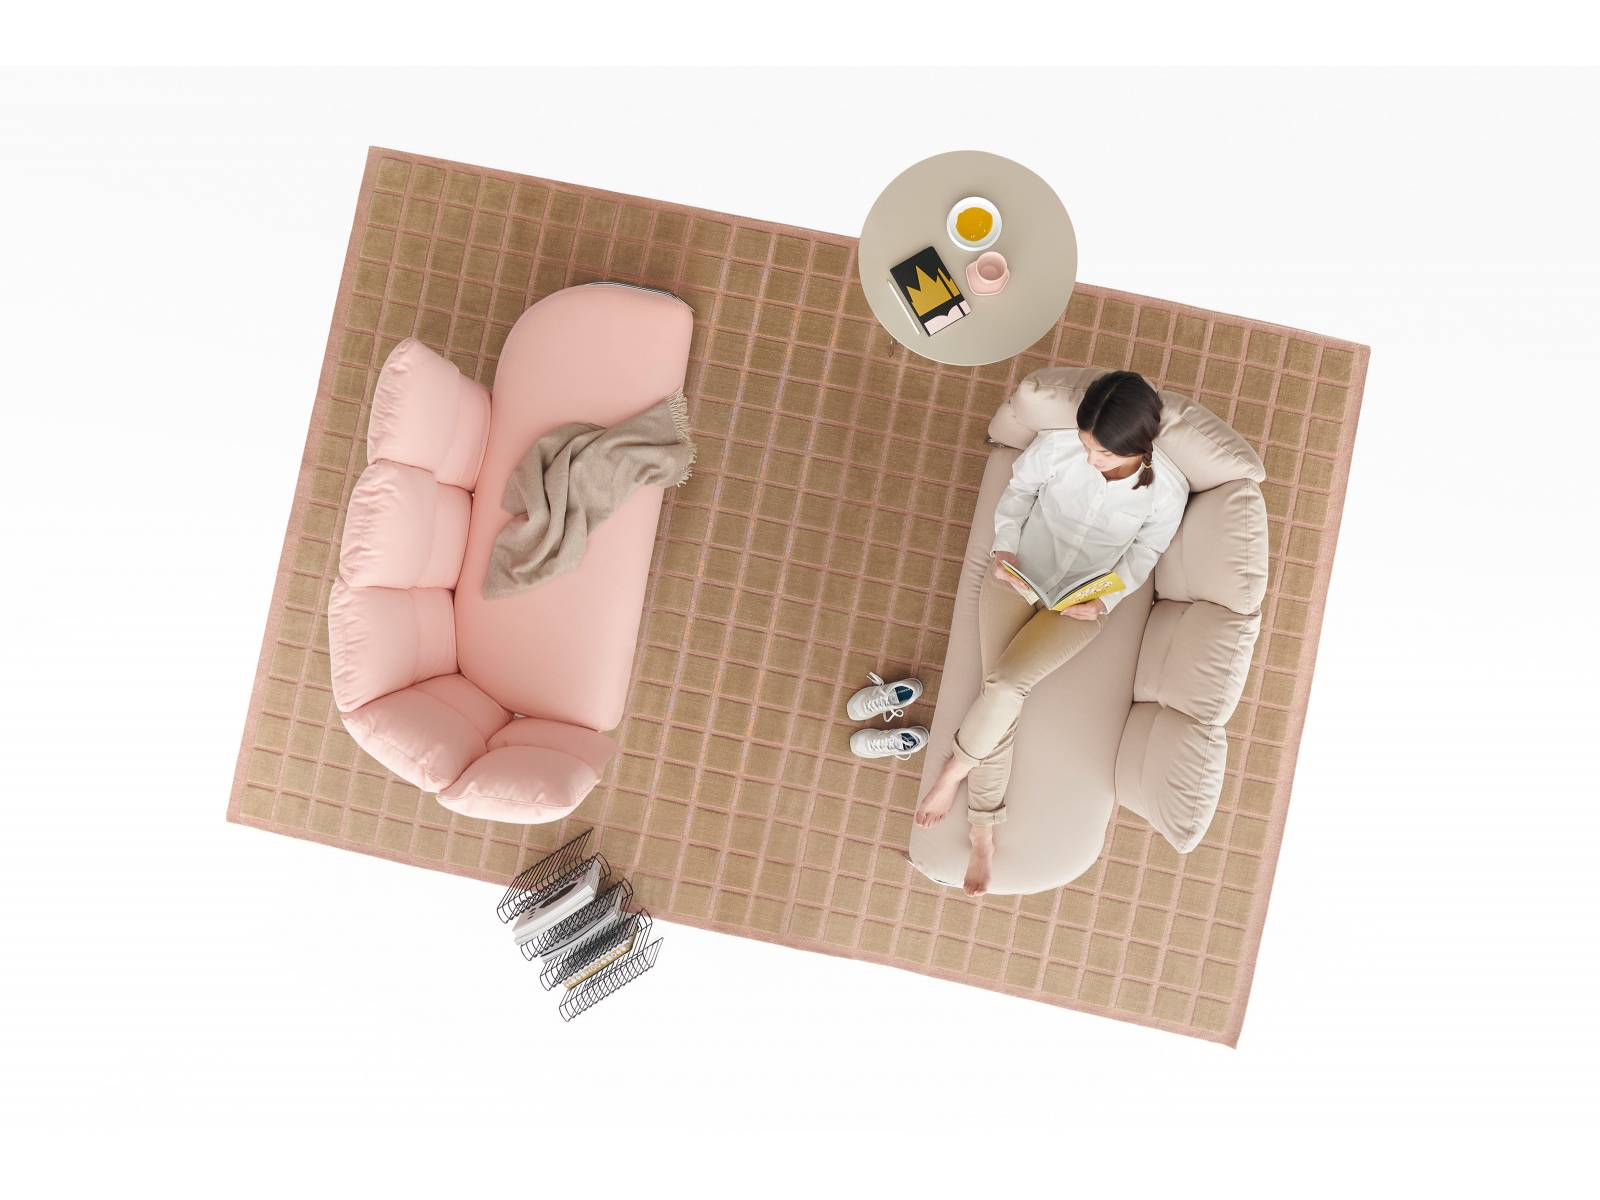 Die Sitzmöbel-Kollektion Undecided ist modular gedacht. Uni, kariert, mit leichten Farbabstufungen oder zufällig kombiniert: Die Stoffe der abnehmbaren, waschbaren Kissen, können individuell zusammengestellt werden. Foto: Miro Zagnoli.